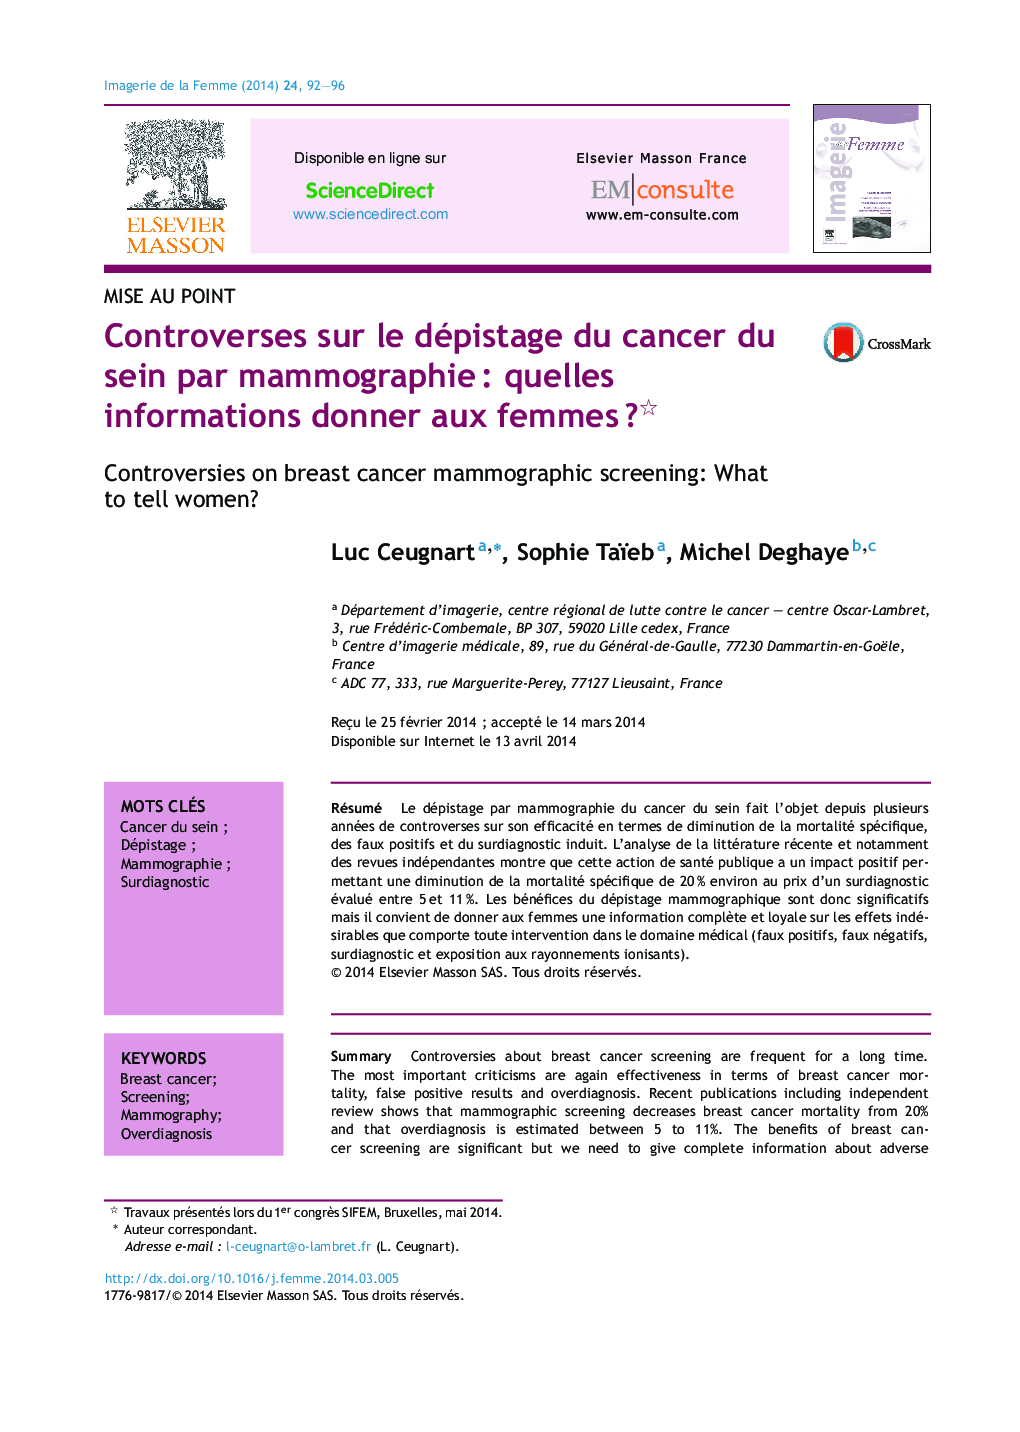 Controverses sur le dépistage du cancer du sein par mammographieÂ : quelles informations donner aux femmesÂ ?